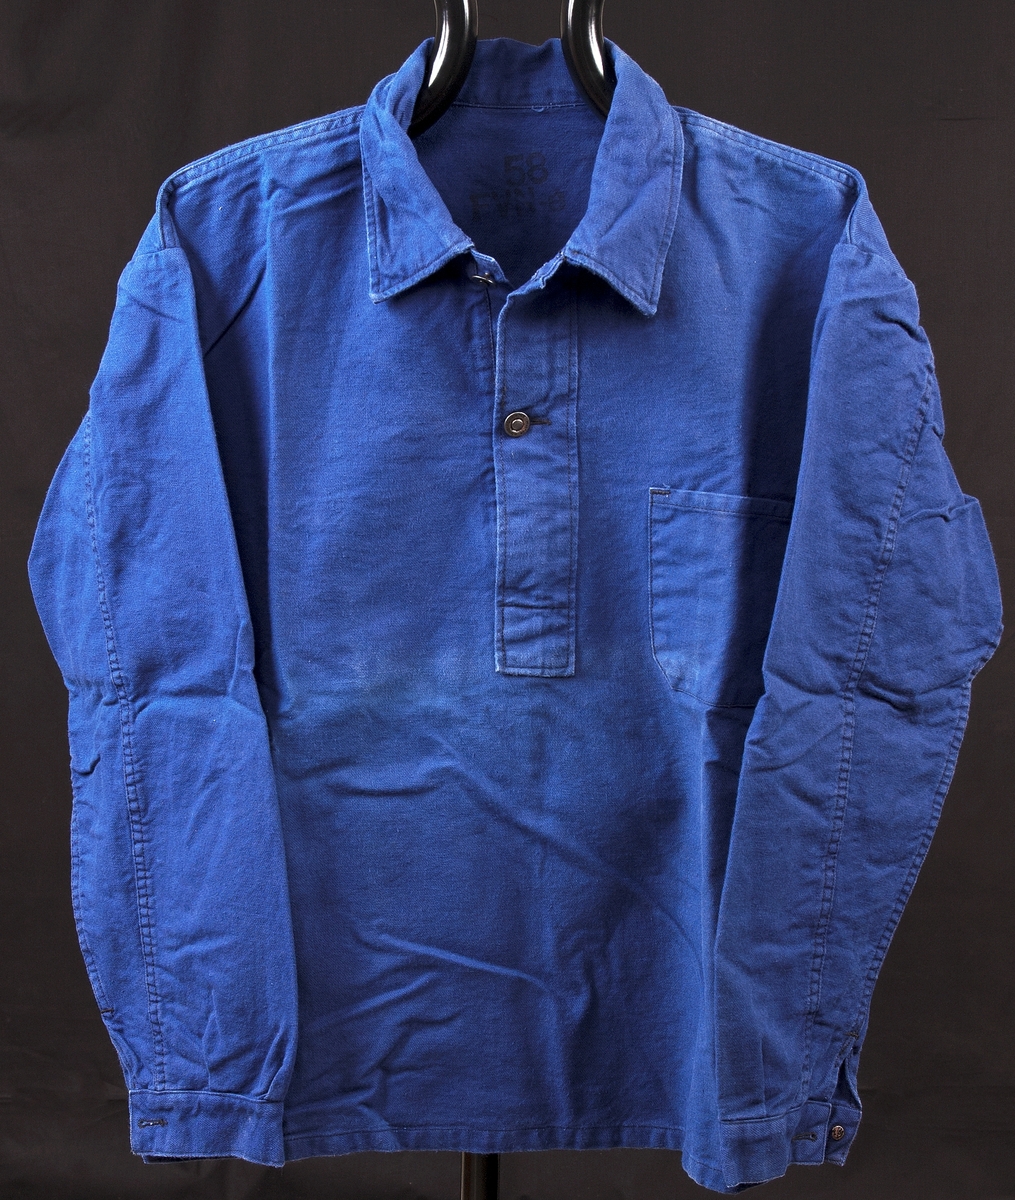 Skjortor och bussaronger av märket "Sanfor". Användes av de intagna i anstaltens arbetsdrift.